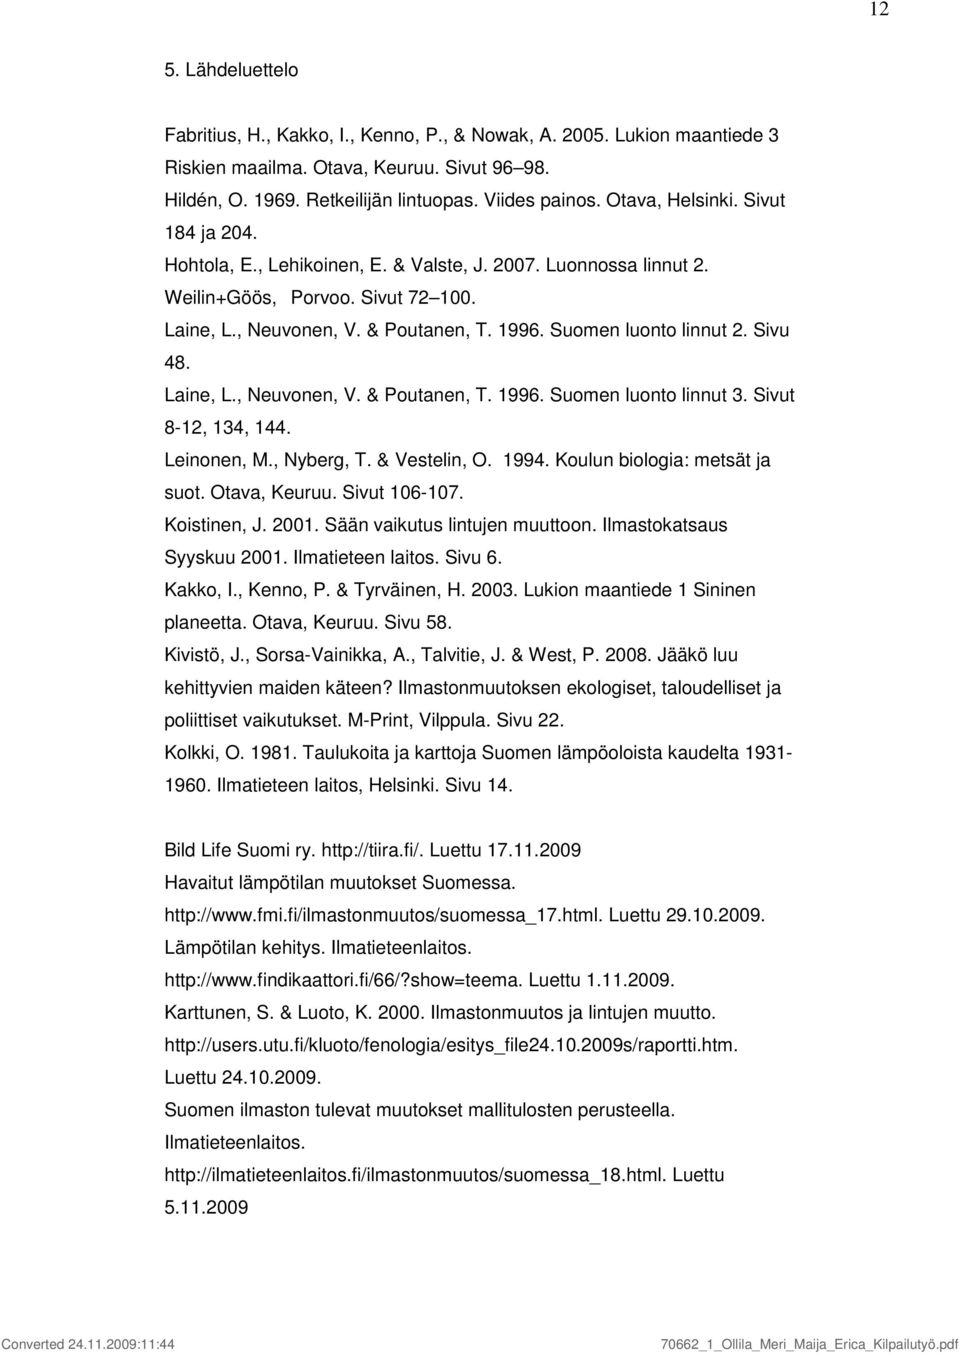 Sivu 48. Laine, L., Neuvonen, V. & Poutanen, T. 996. Suomen luonto linnut 3. Sivut 8-2, 34, 44. Leinonen, M., Nyberg, T. & Vestelin, O. 994. Koulun biologia: metsät ja suot. Otava, Keuruu. Sivut 6-7.